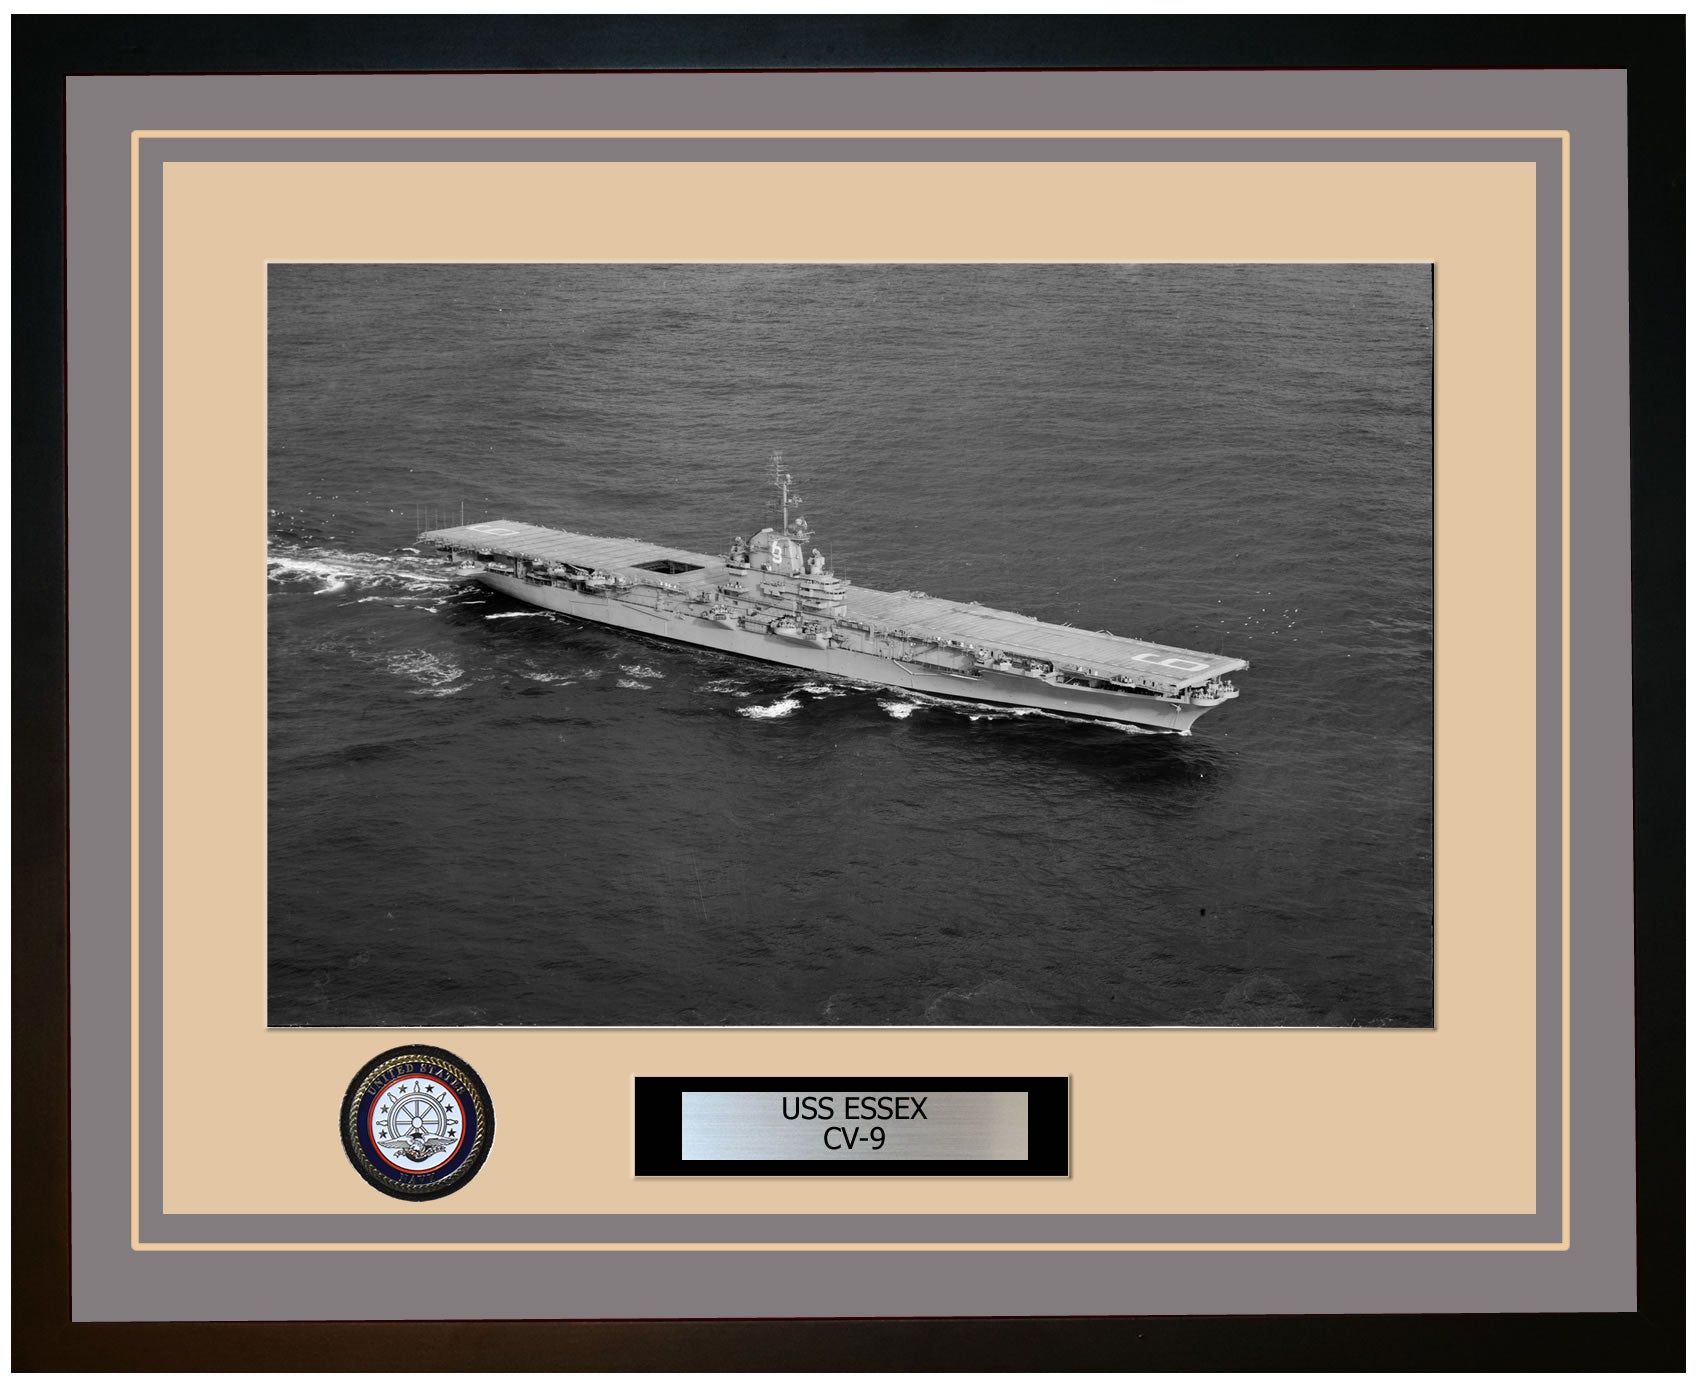 USS ESSEX CV-9 Framed Navy Ship Photo Grey